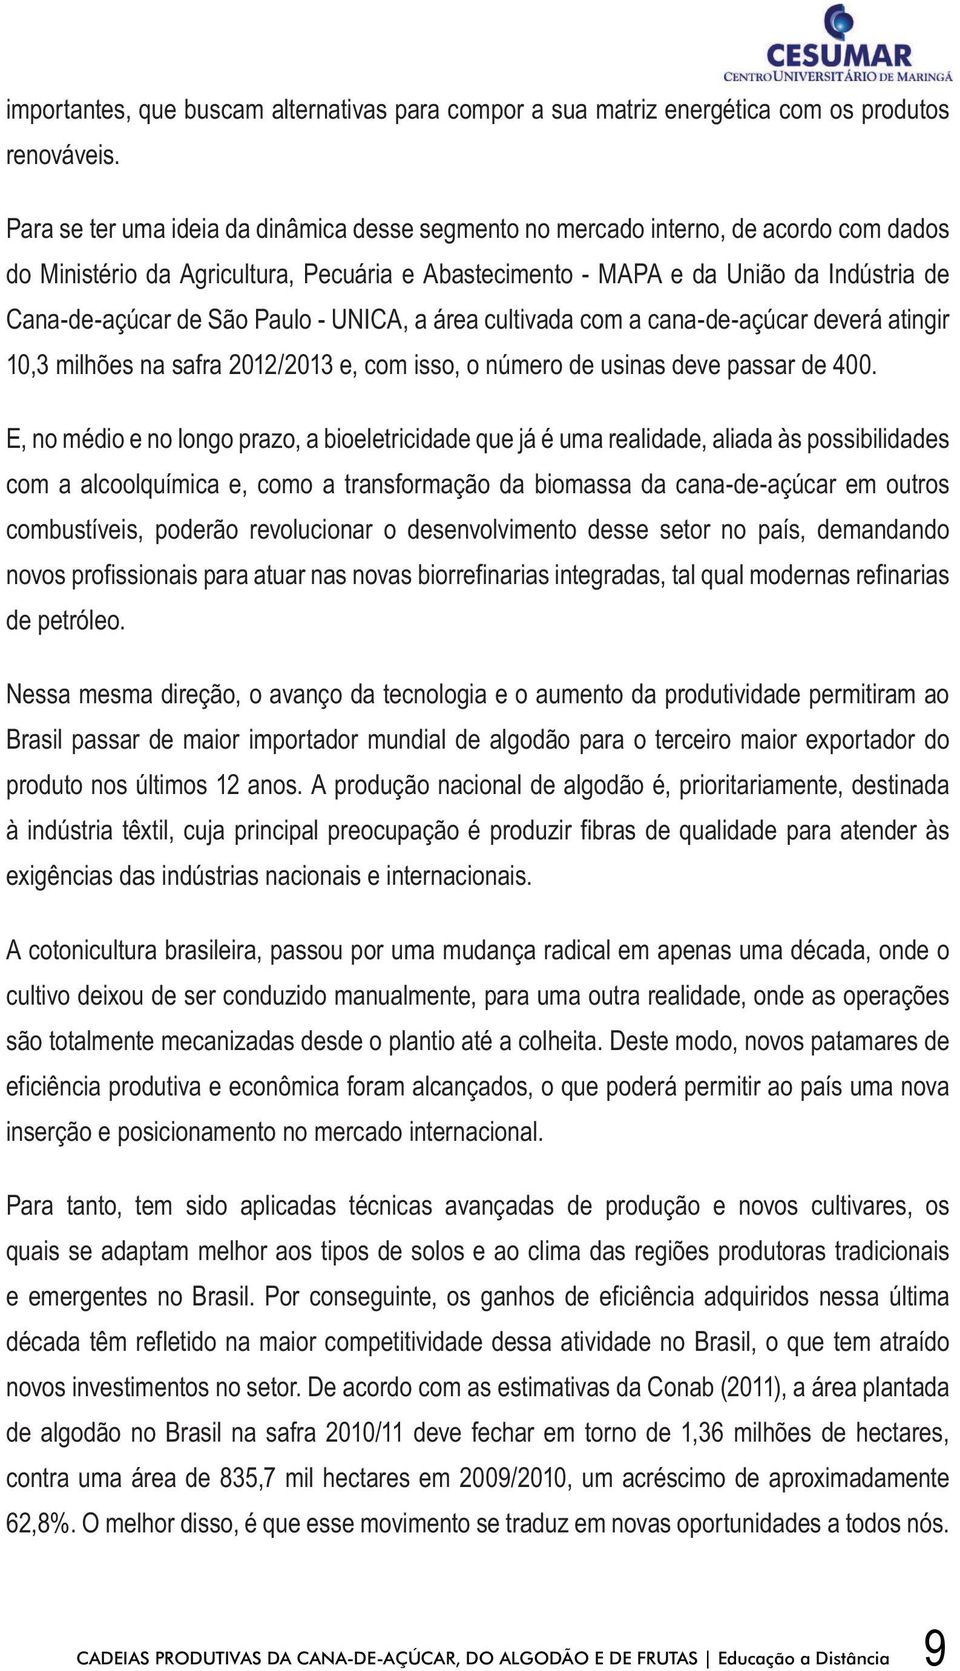 Paulo - UNICA, a área cultivada com a cana-de-açúcar deverá atingir 10,3 milhões na safra 2012/2013 e, com isso, o número de usinas deve passar de 400.